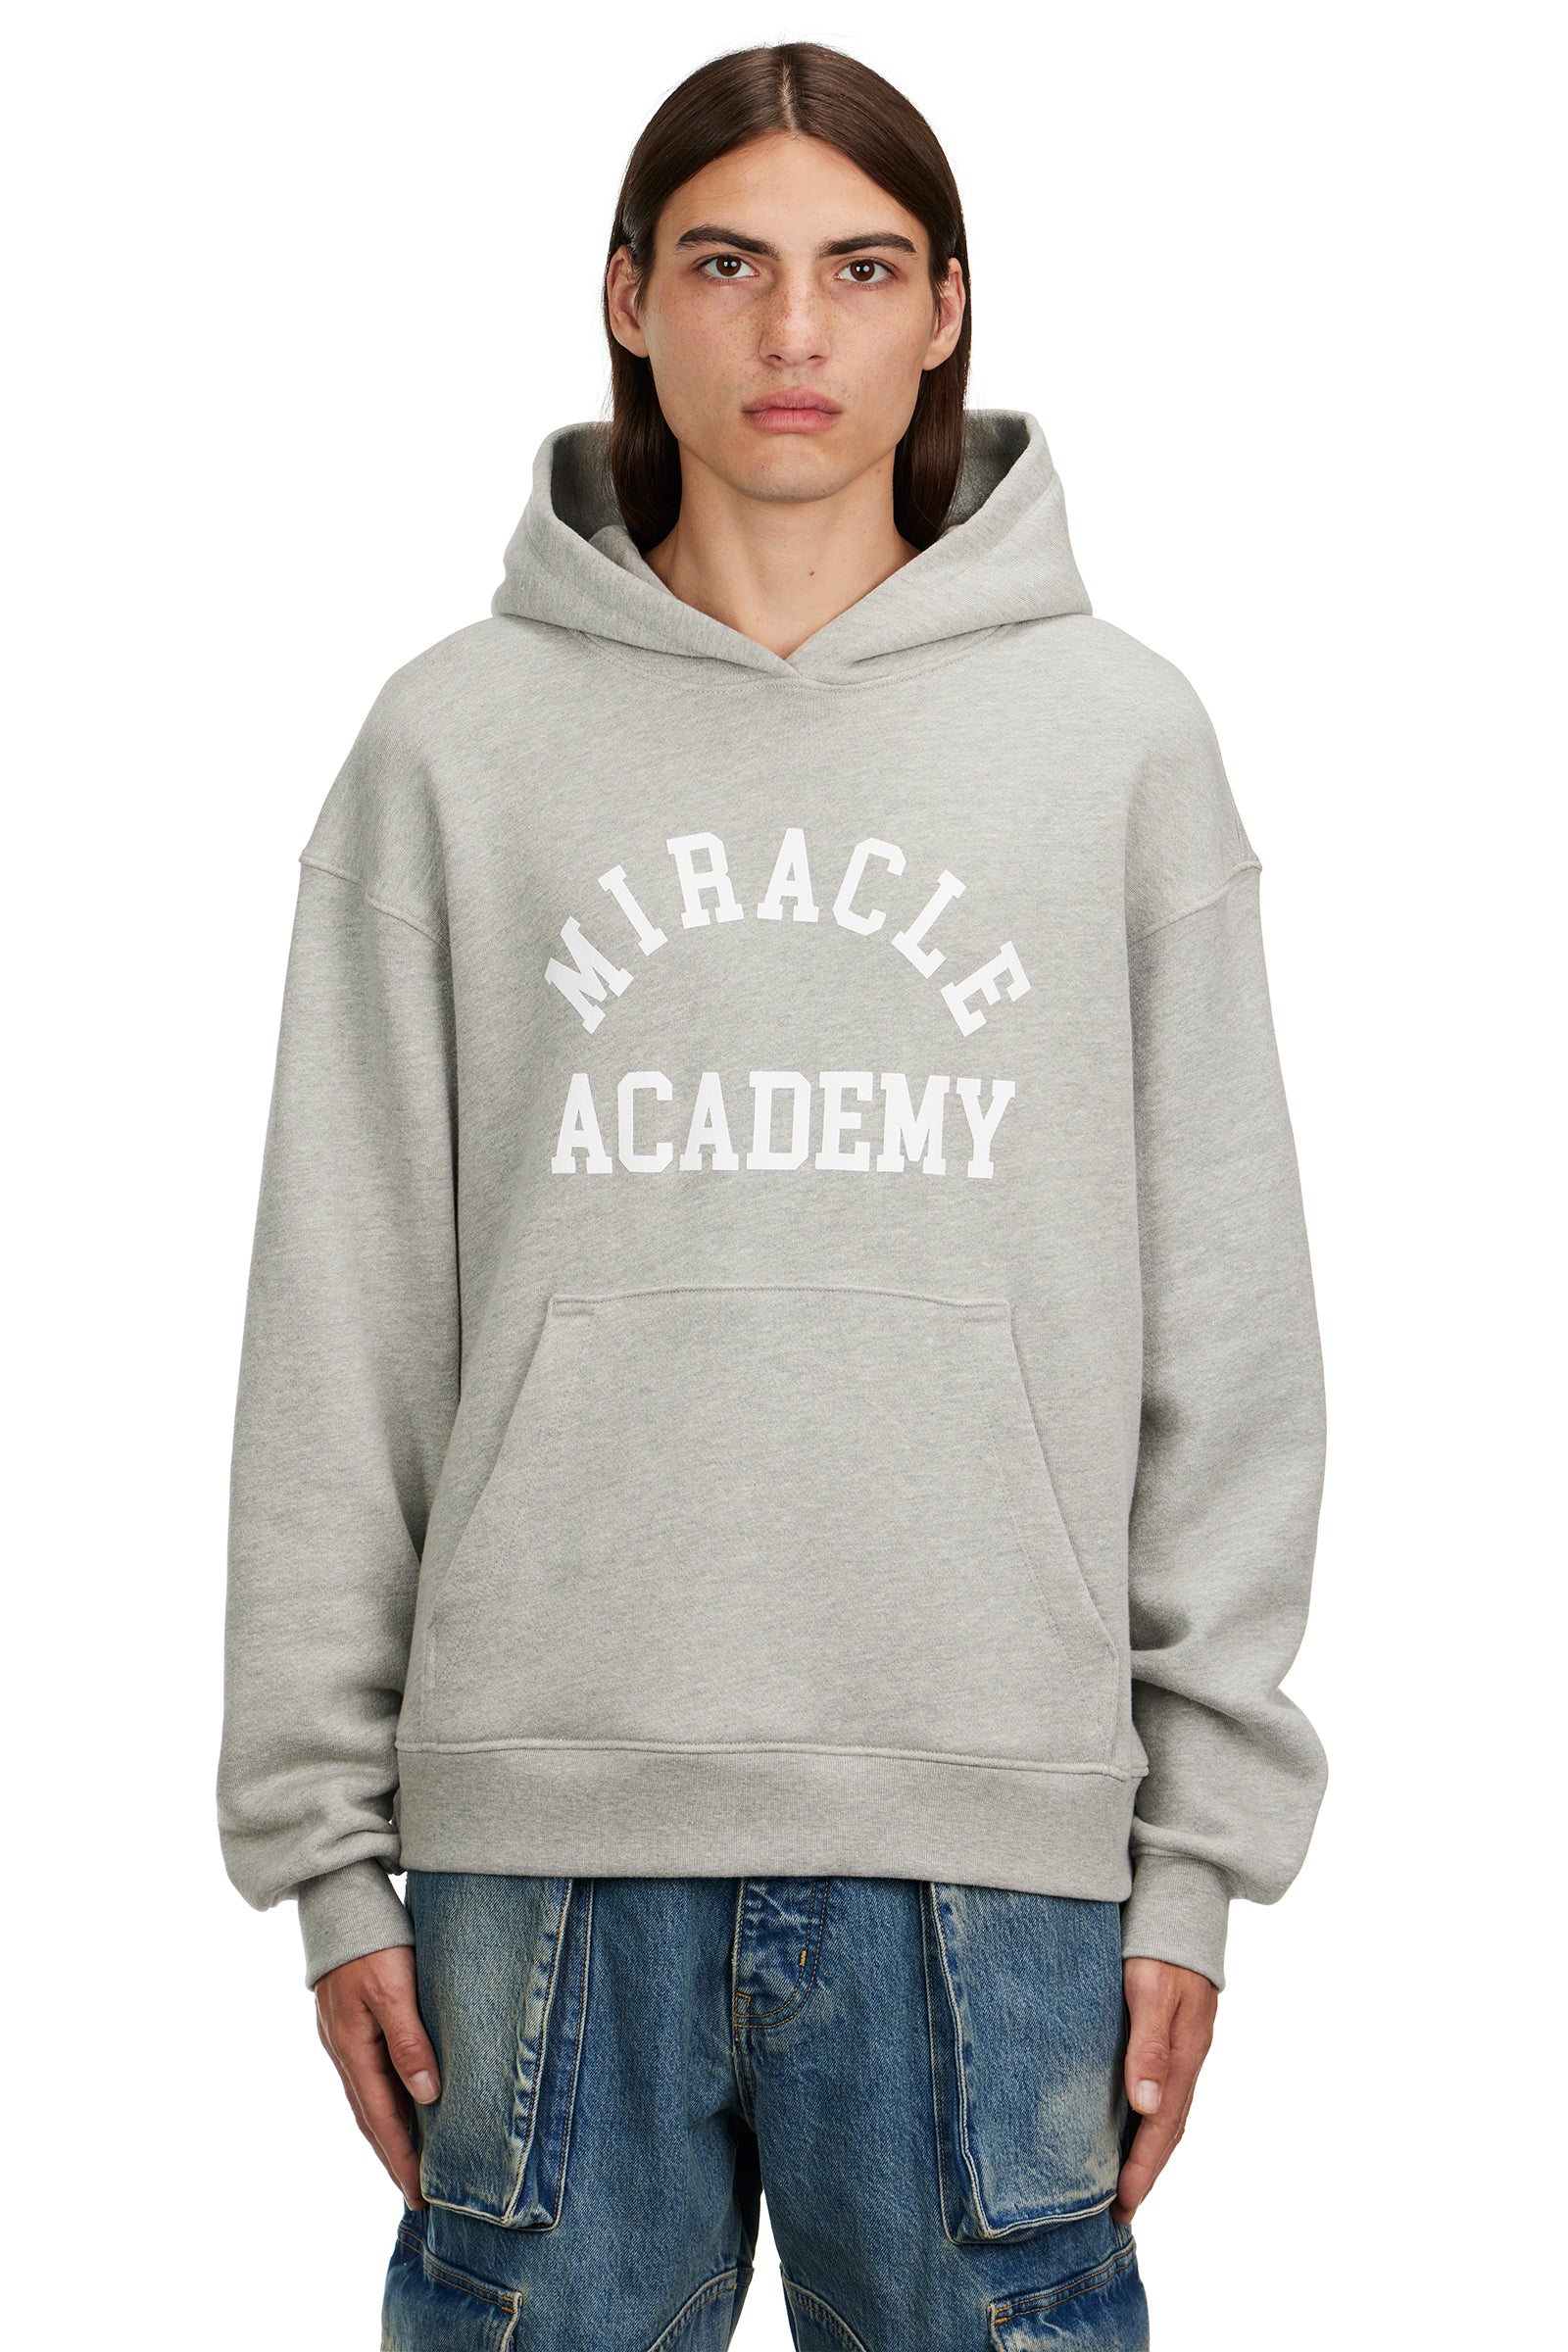 Miracle Academy Hoodie